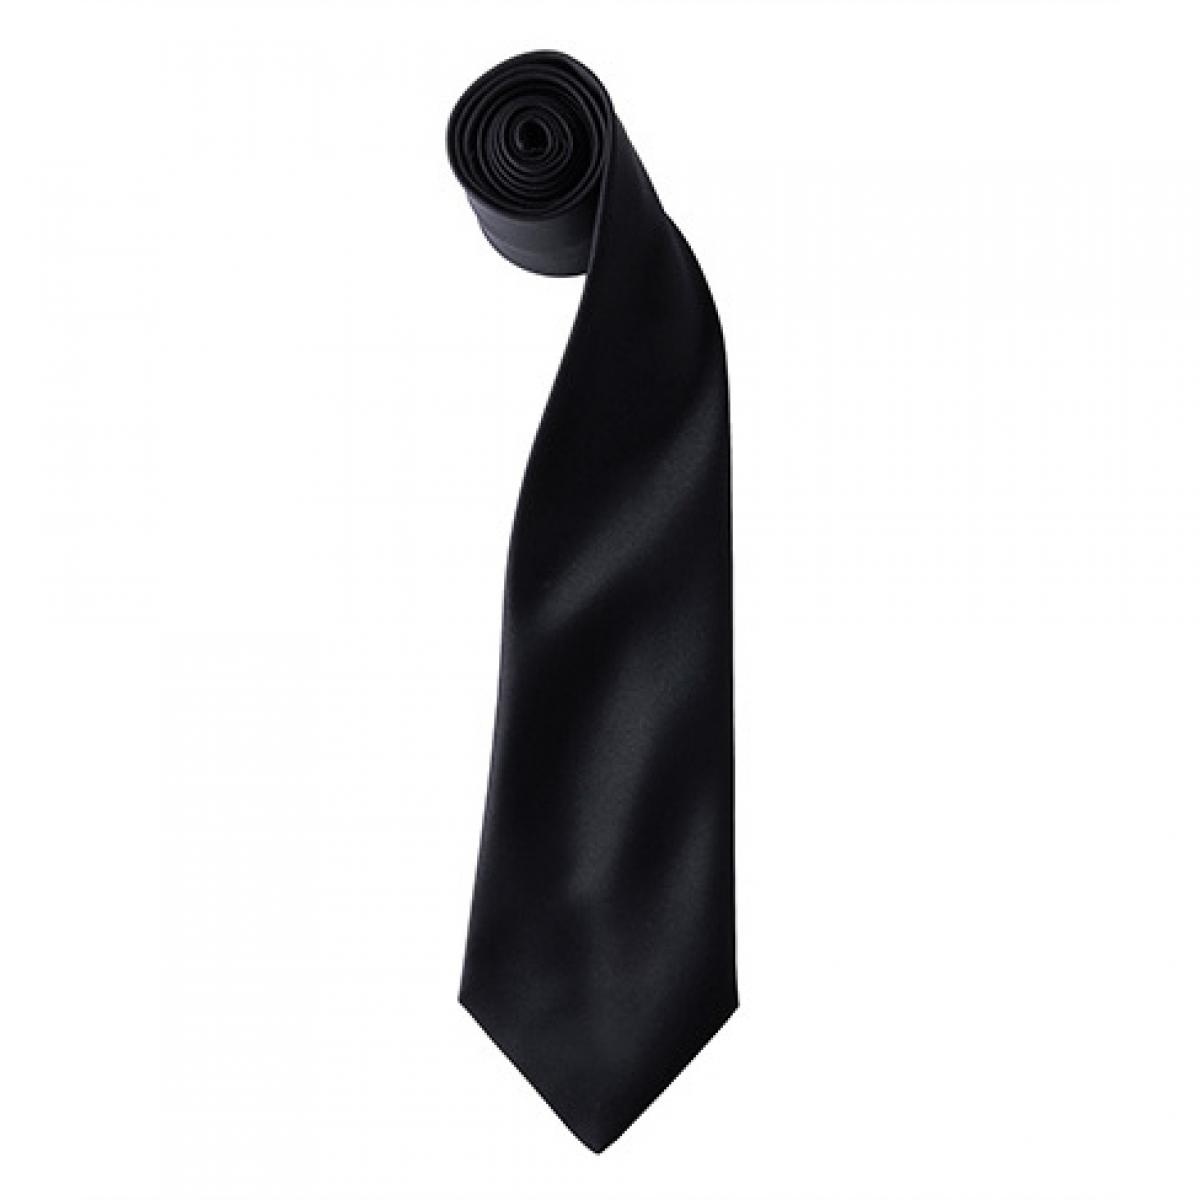 Hersteller: Premier Workwear Herstellernummer: PR750 Artikelbezeichnung: Satin Tie ´Colours´ / 144 x 8,5 cm Farbe: Black